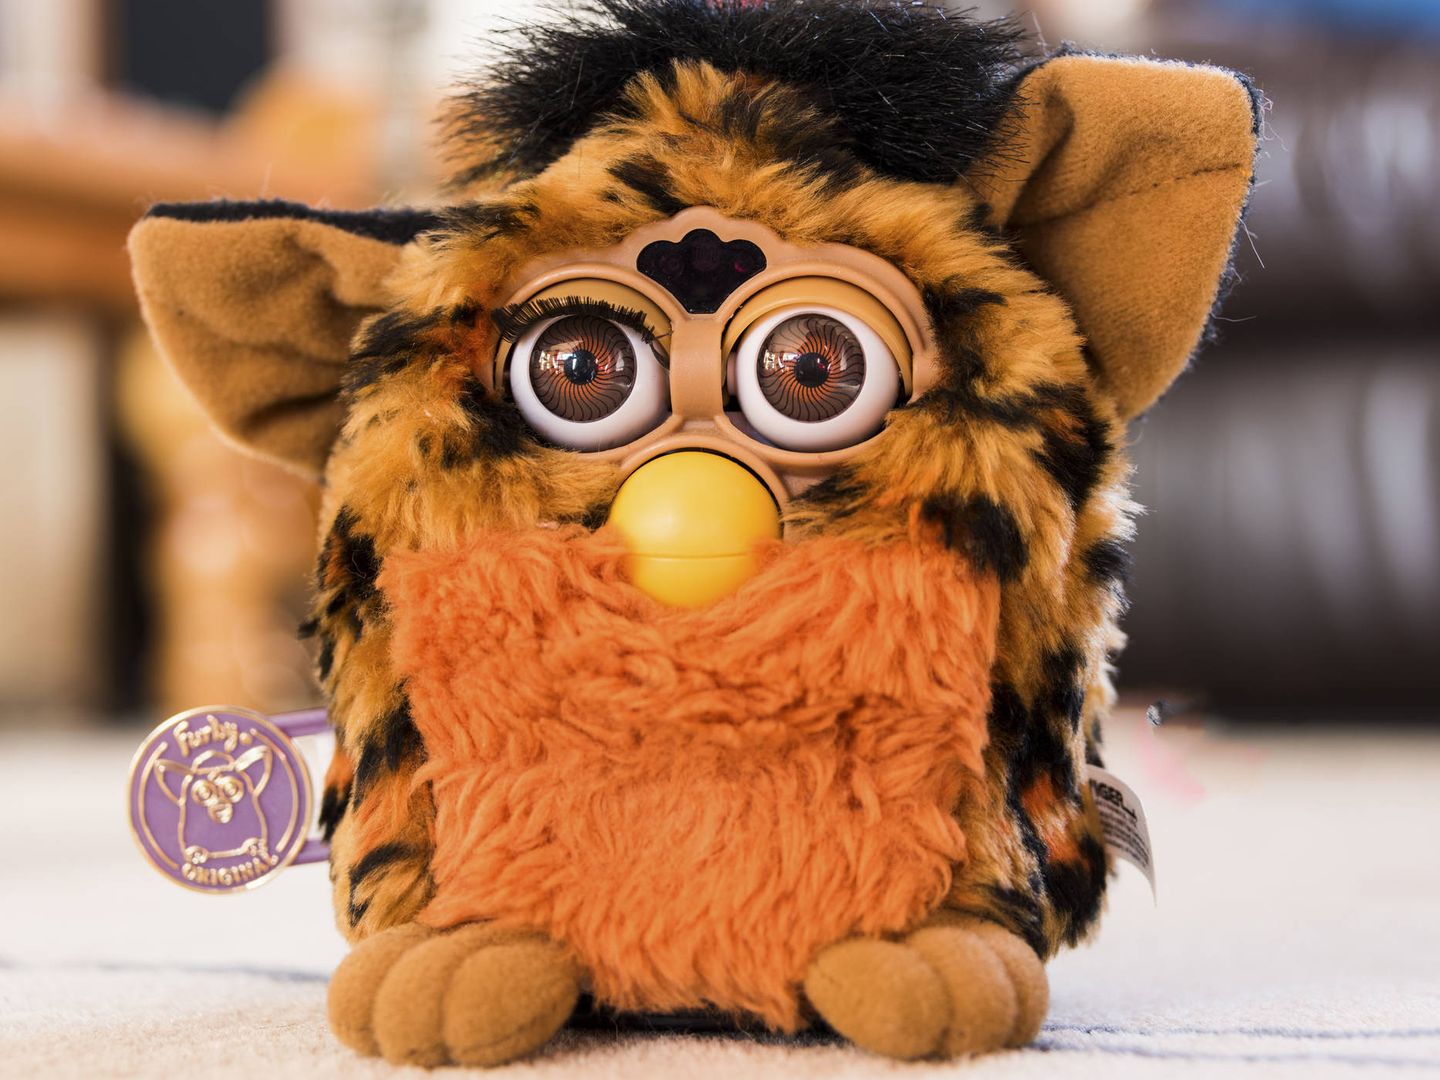 Furby (Fuente: iStock)